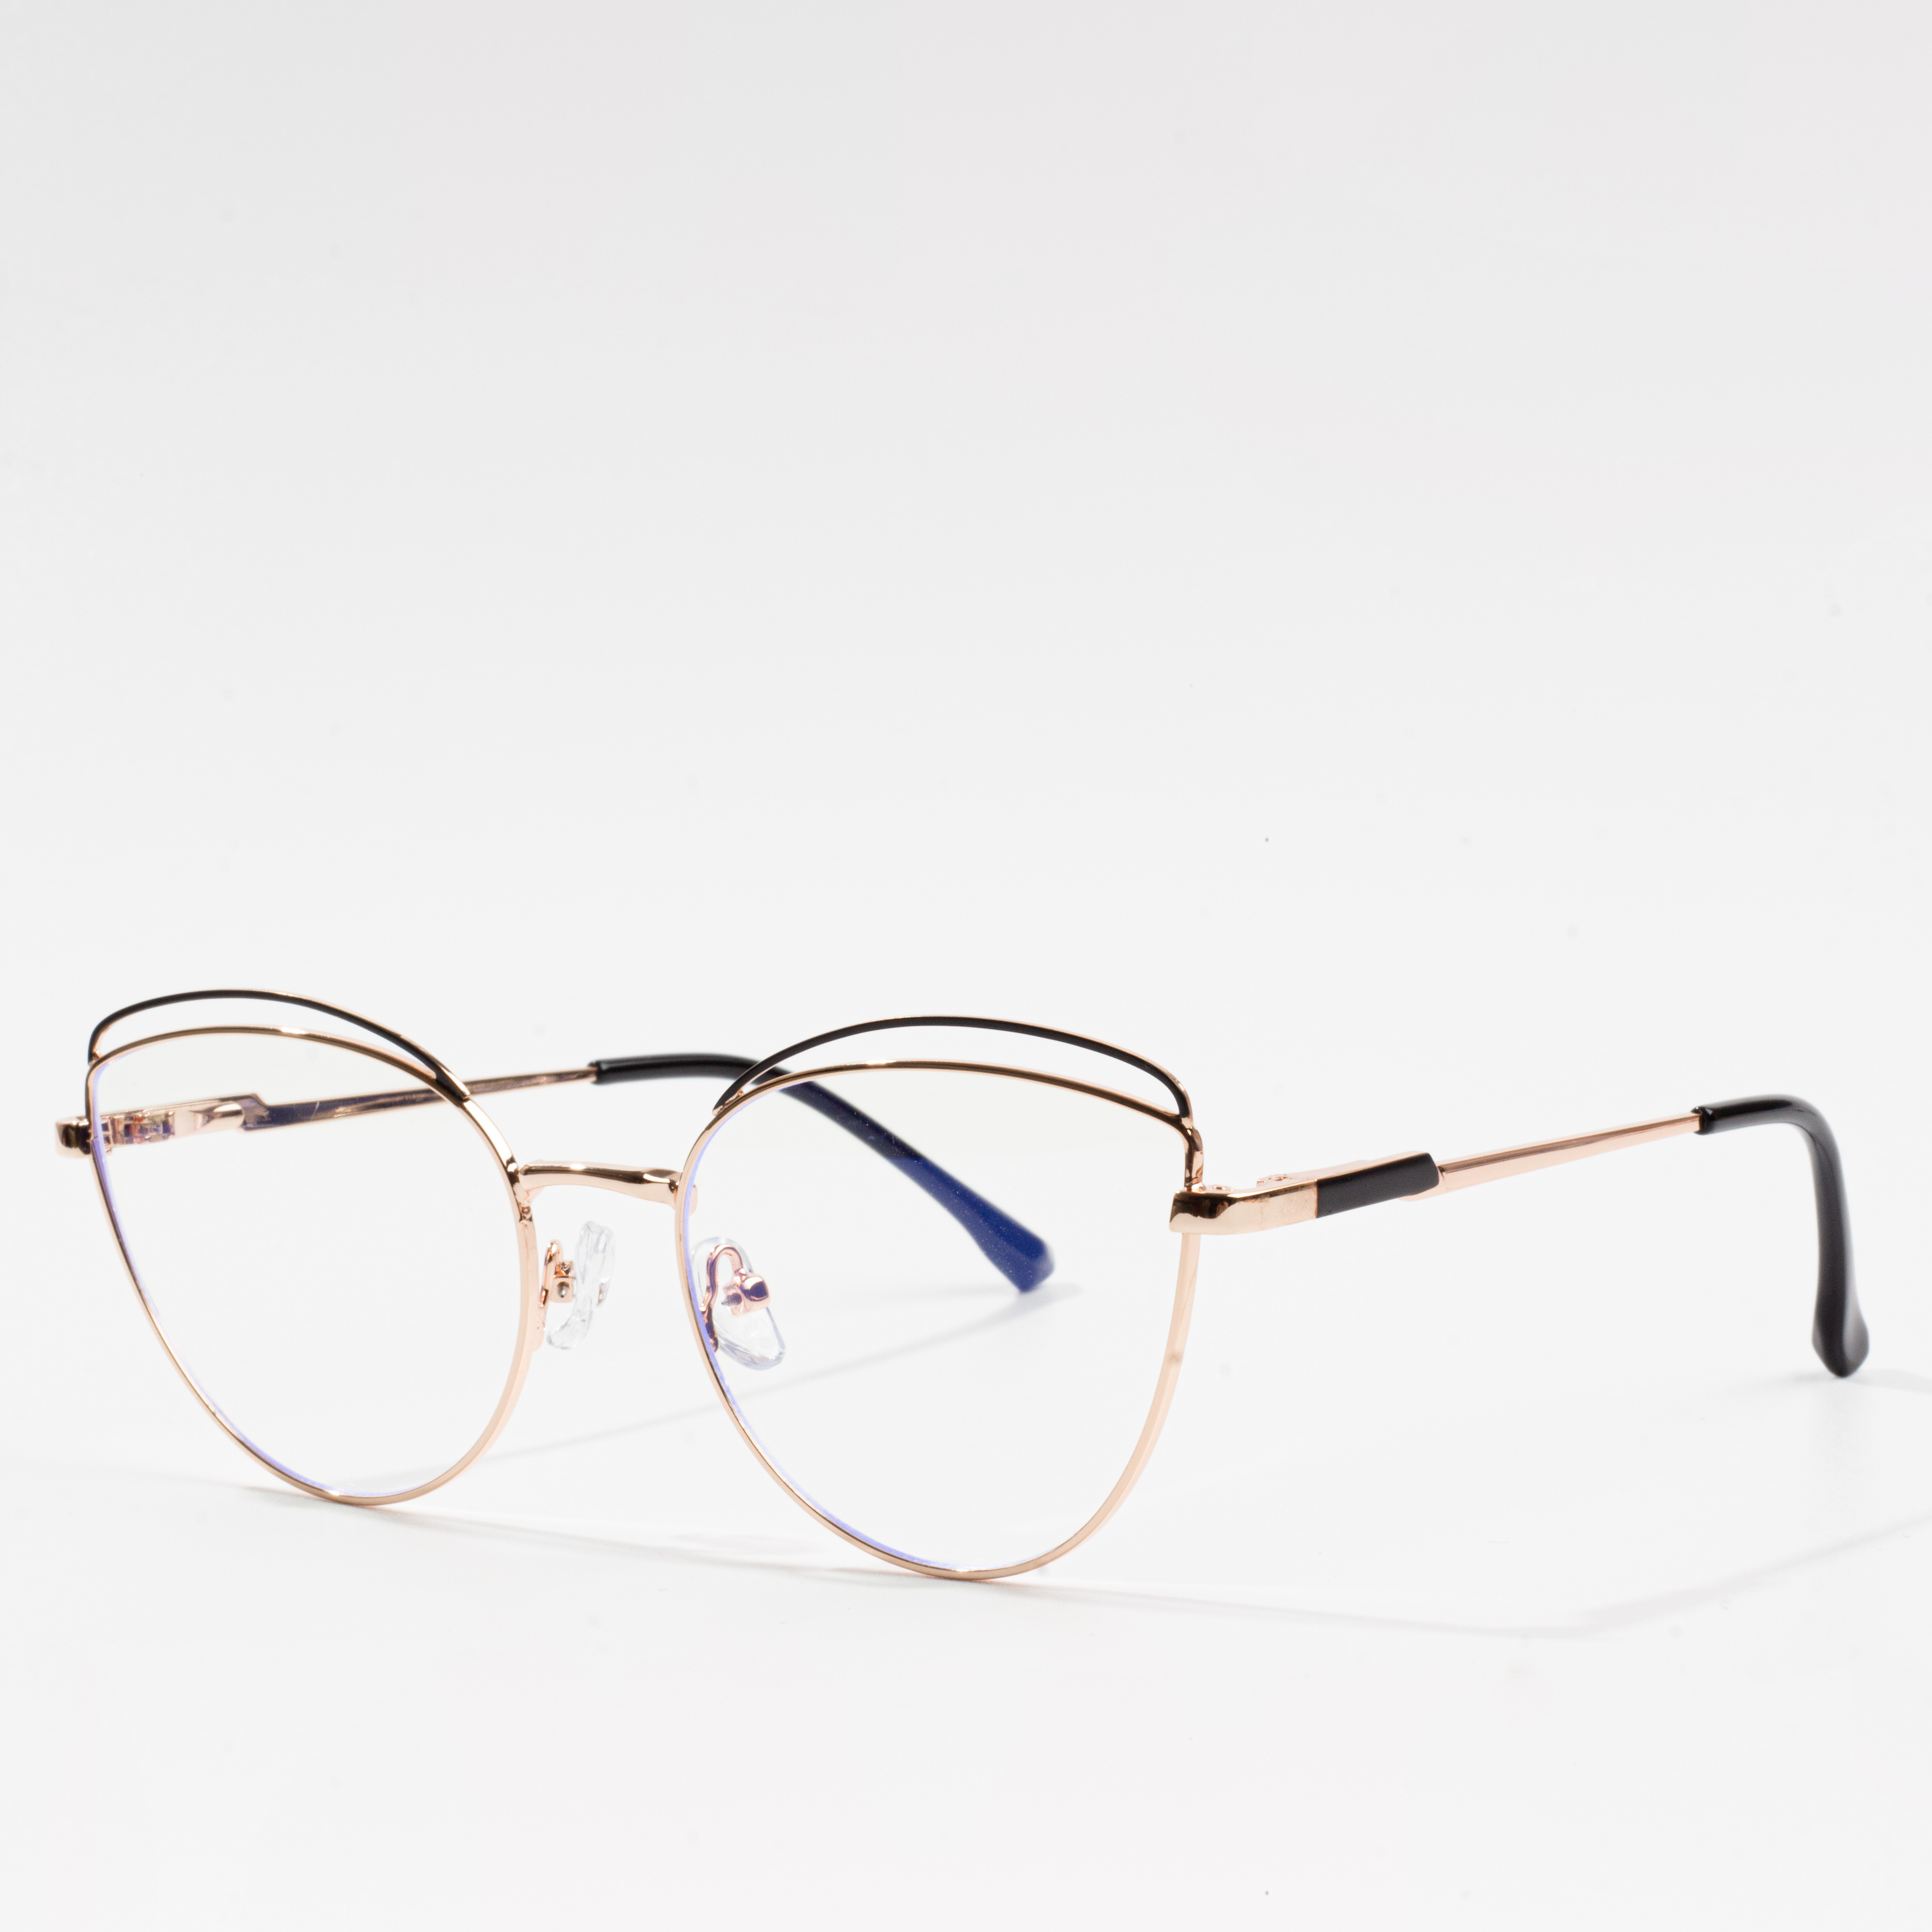 stylish eyeglass frames